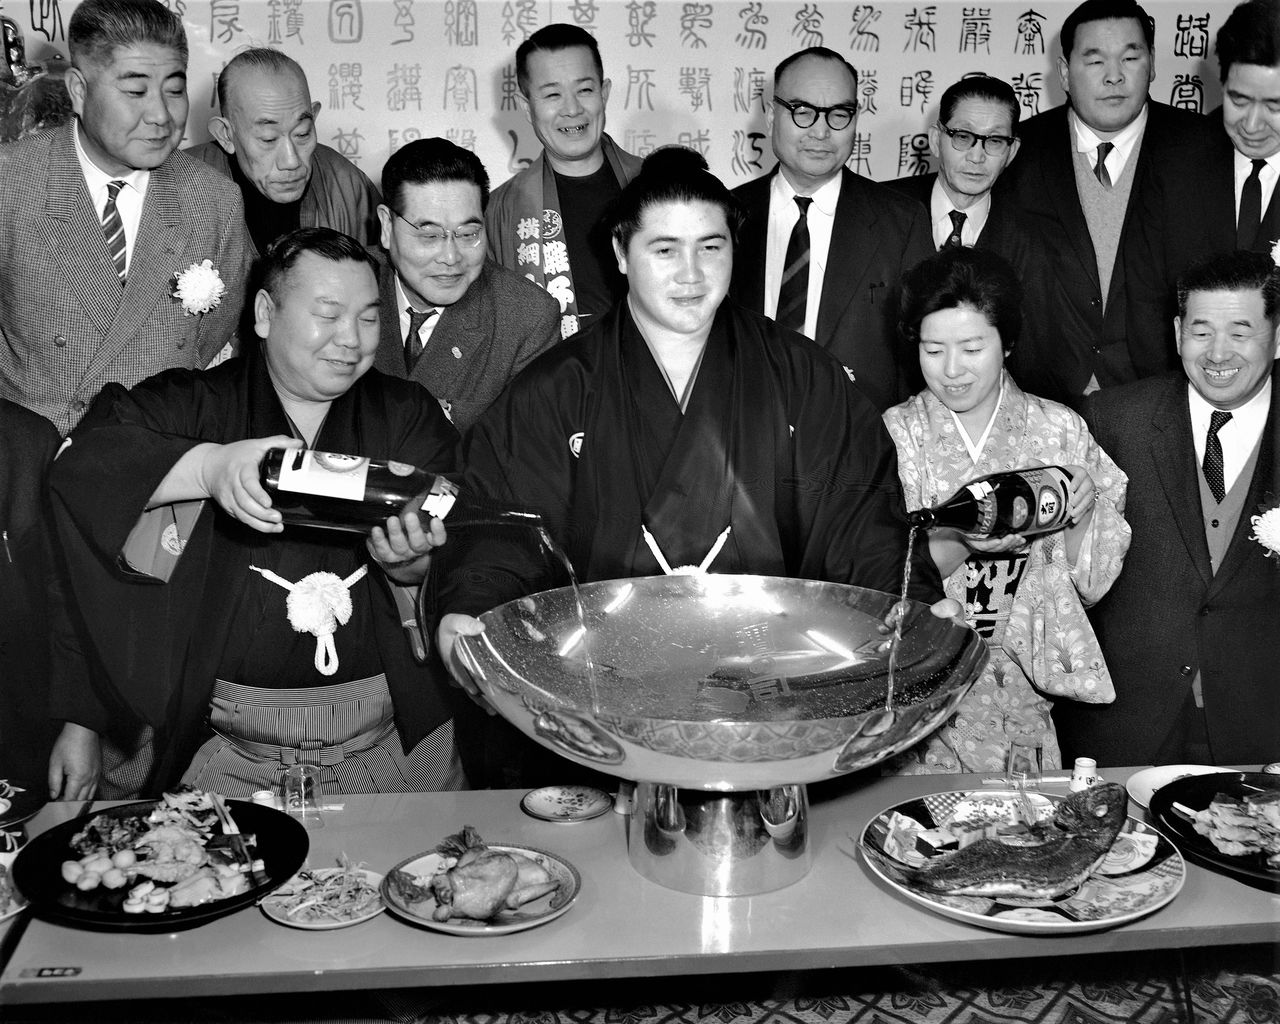 Taihō, consiguió ser el 48.º yokozuna. Su palmarés es extraordinario. Ganó 32 campeonatos de la categoría makuuchi (la más alta en el sumō), seis torneos consecutivos dos veces y todos los combates en ocho torneos. Su fuerza abrumadora provocó el frenesí de Japón en la década de 1960.